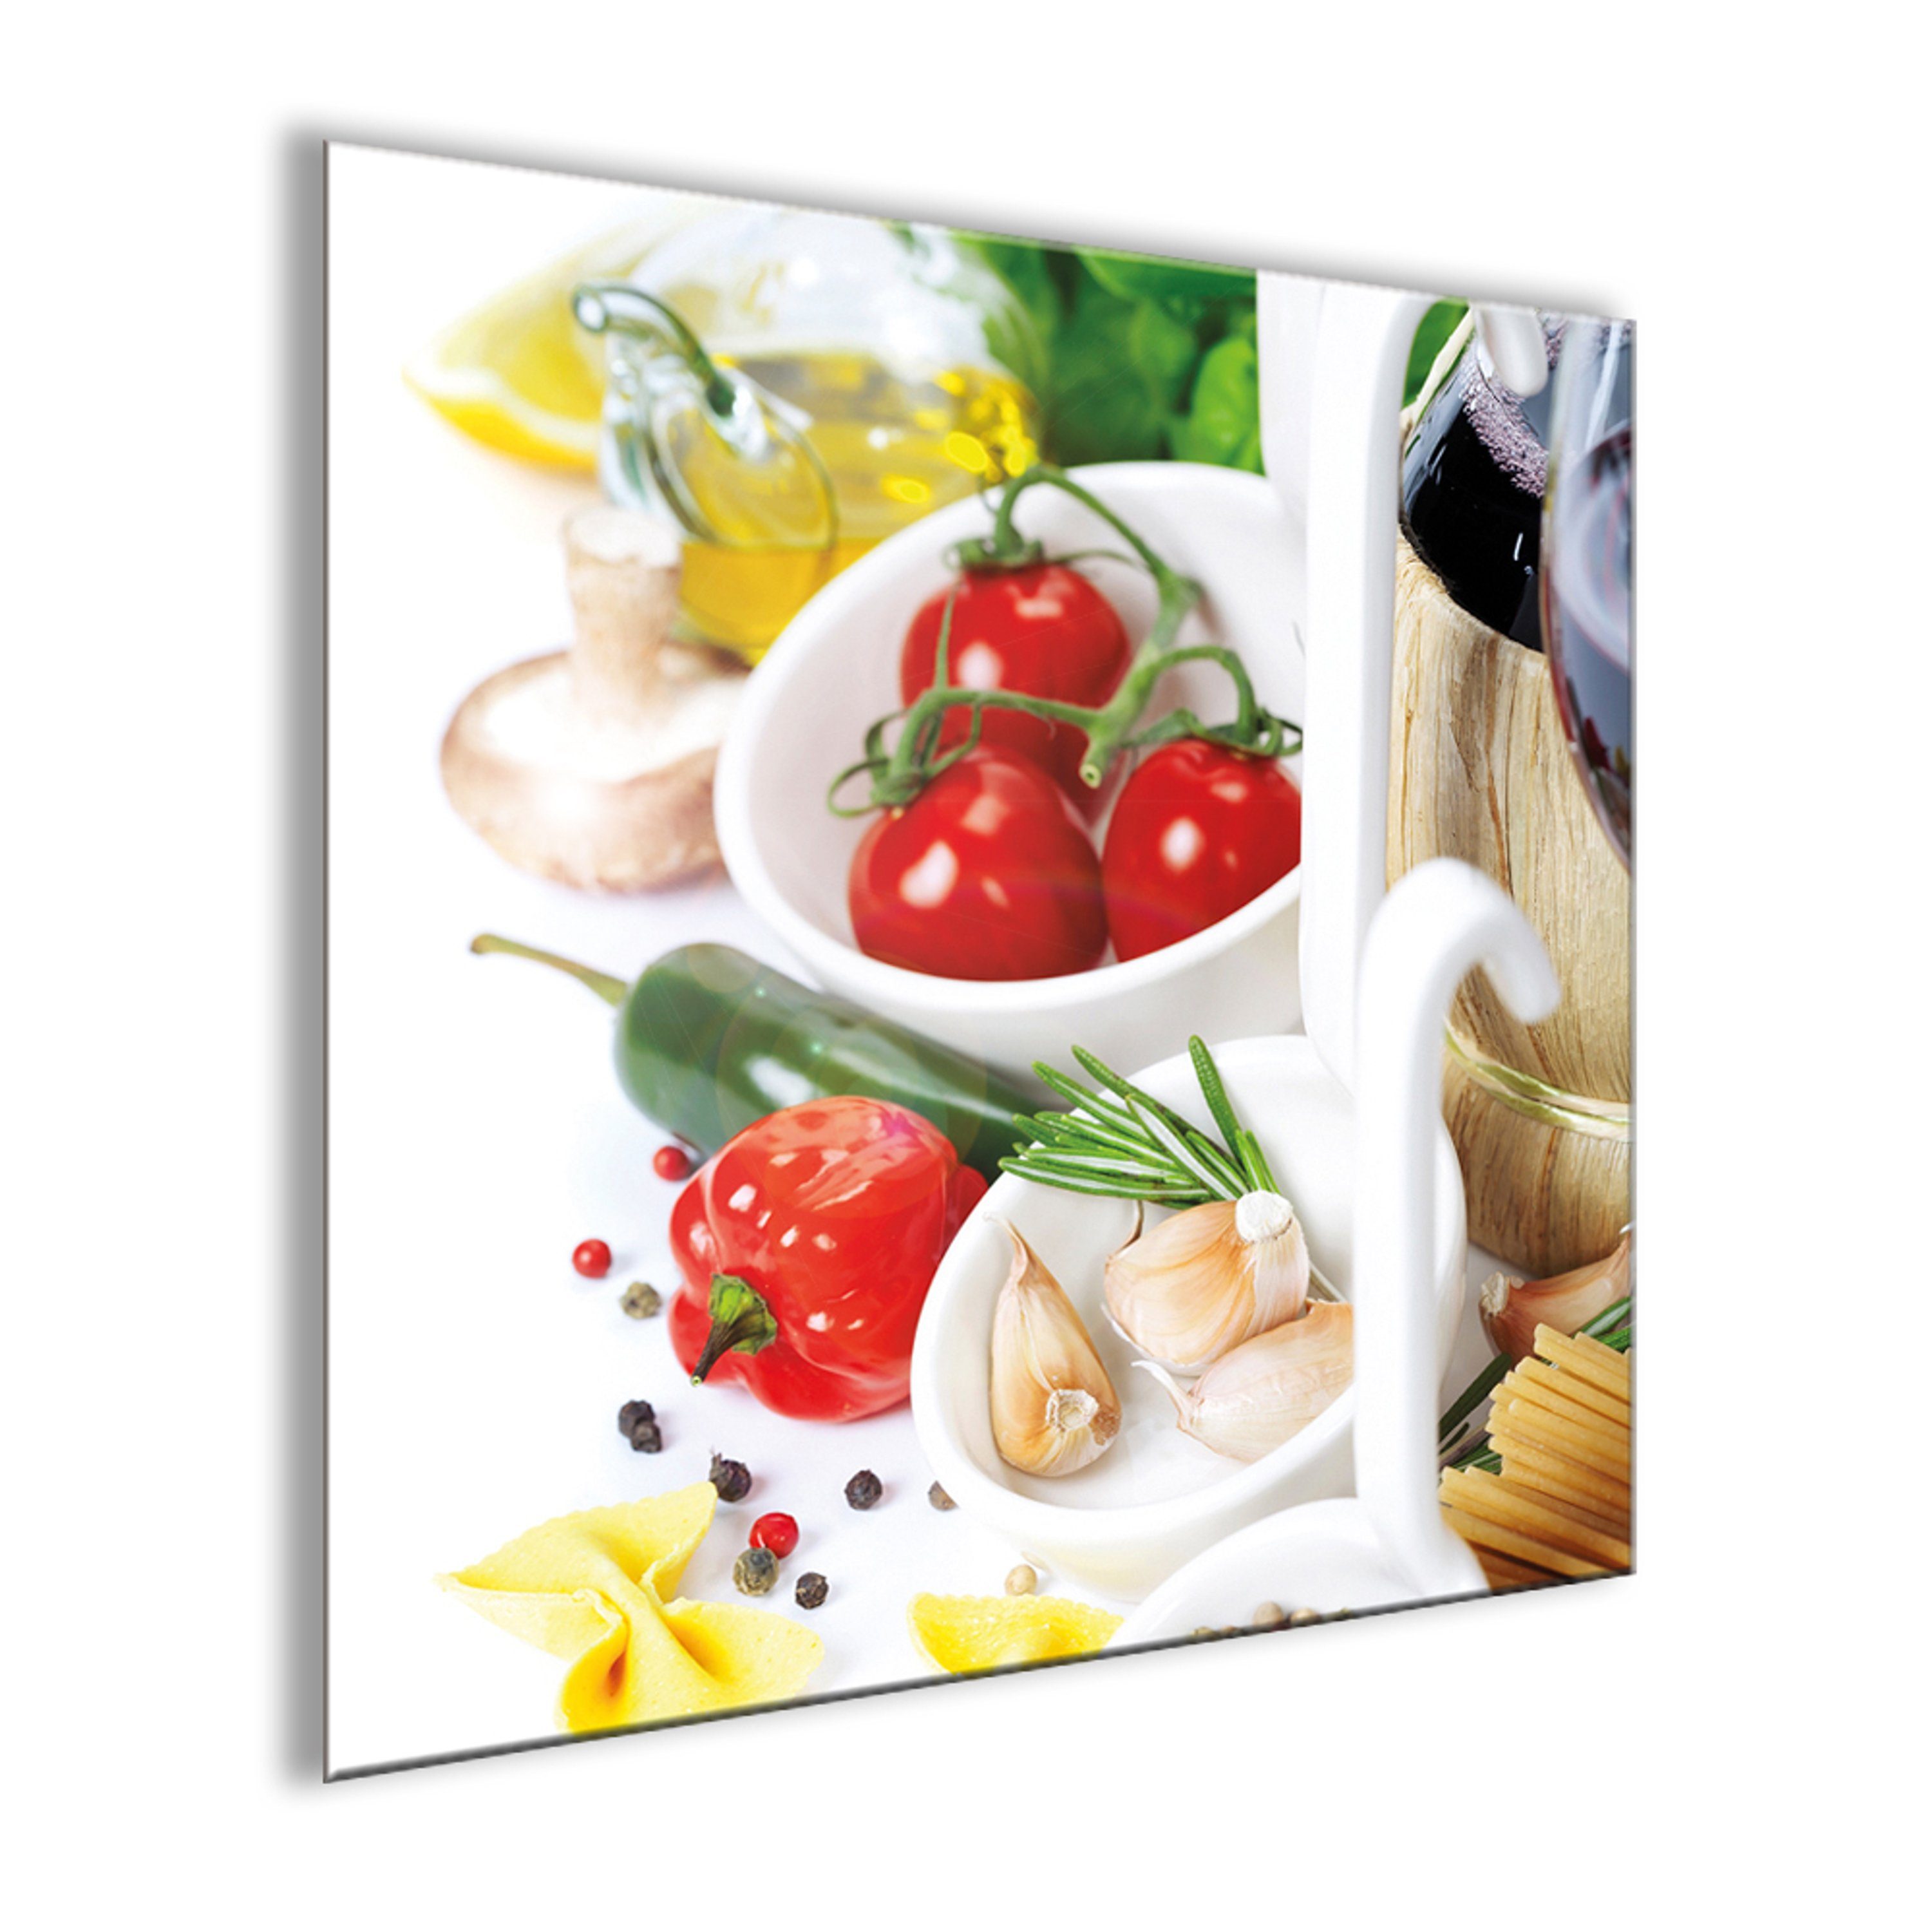 Glasbild 30x30cm Italien Küche Kräuter Kräuter Pasta, italienische Bild artissimo Gemüse Glasbild